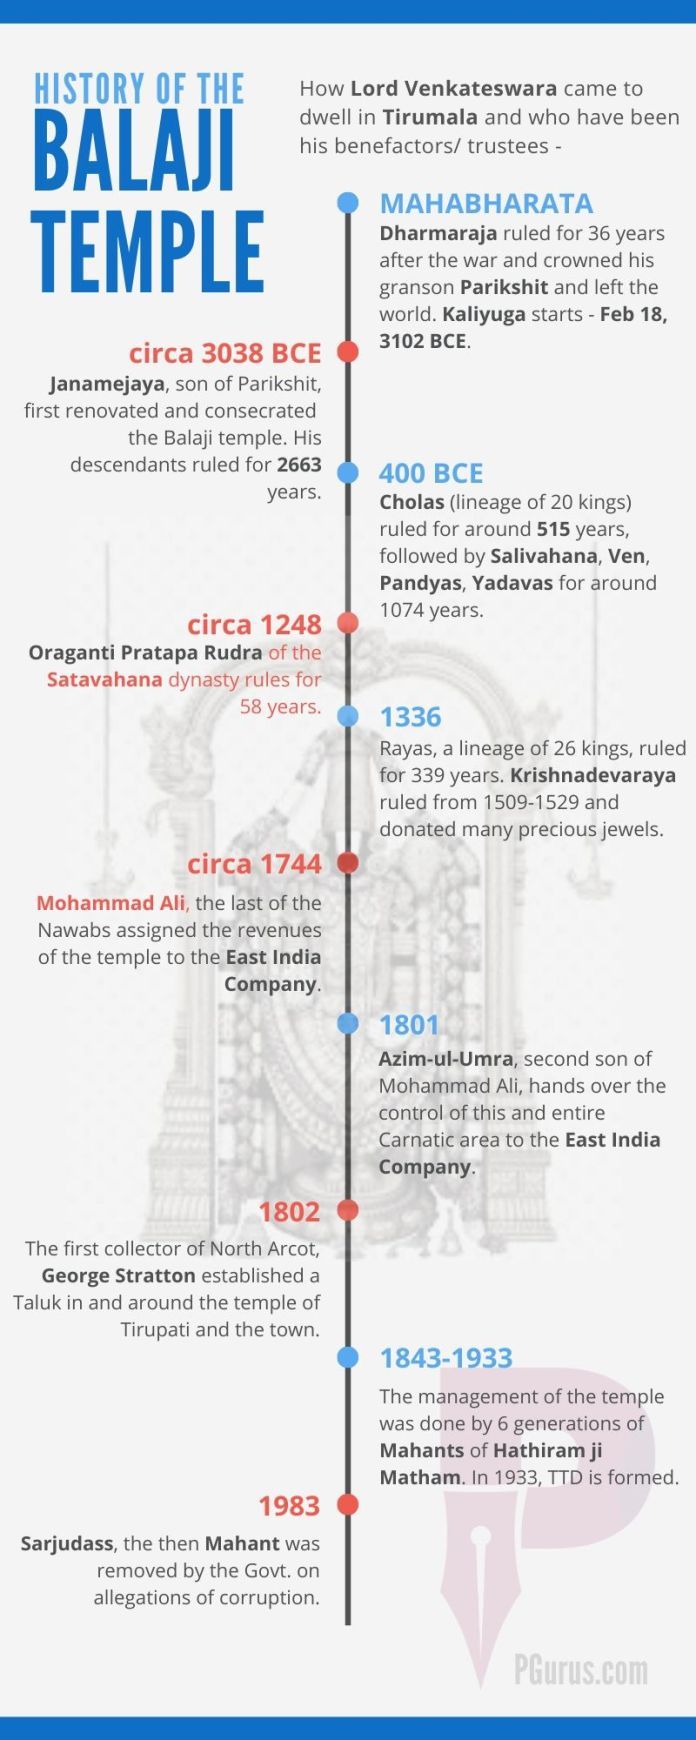 Timeline of Sri Venkateswara Swamy (Balaji) Temple